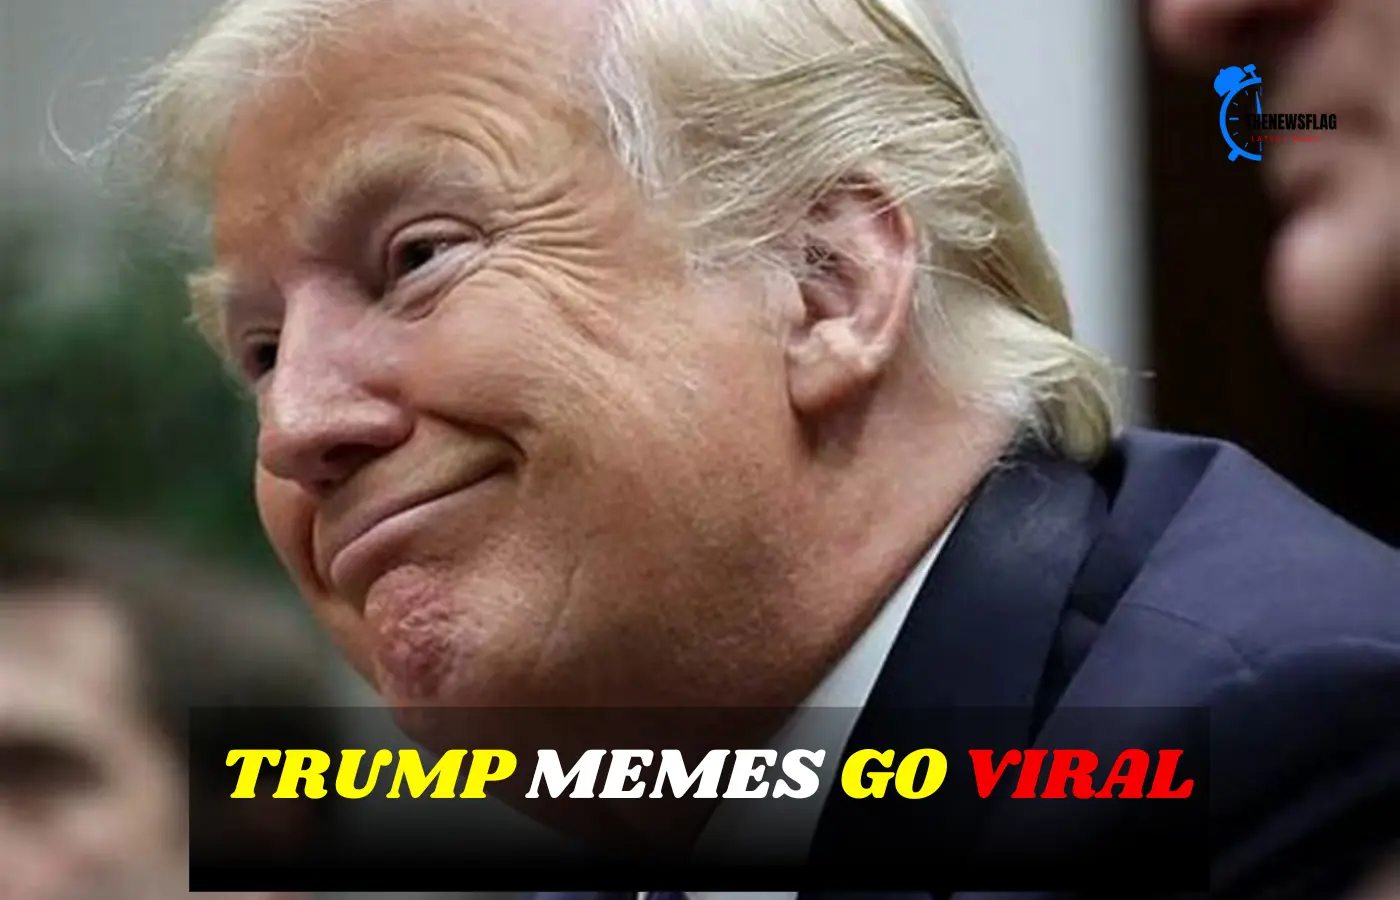 Trump memes go vira